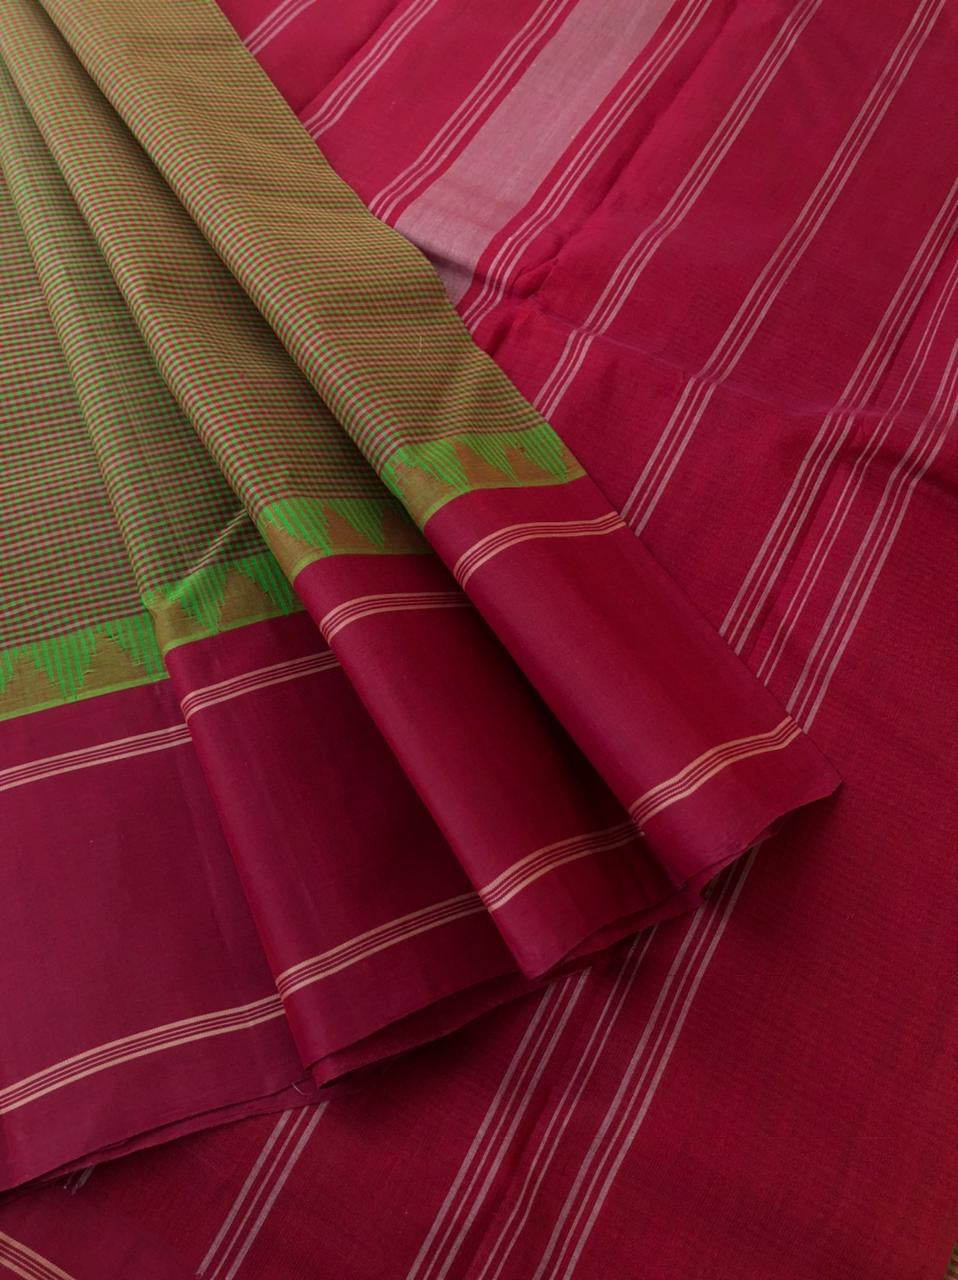 Signature Korvai Silk Cottons - absolutely gorgeous maanthulir aaraku kasa kasa kattam